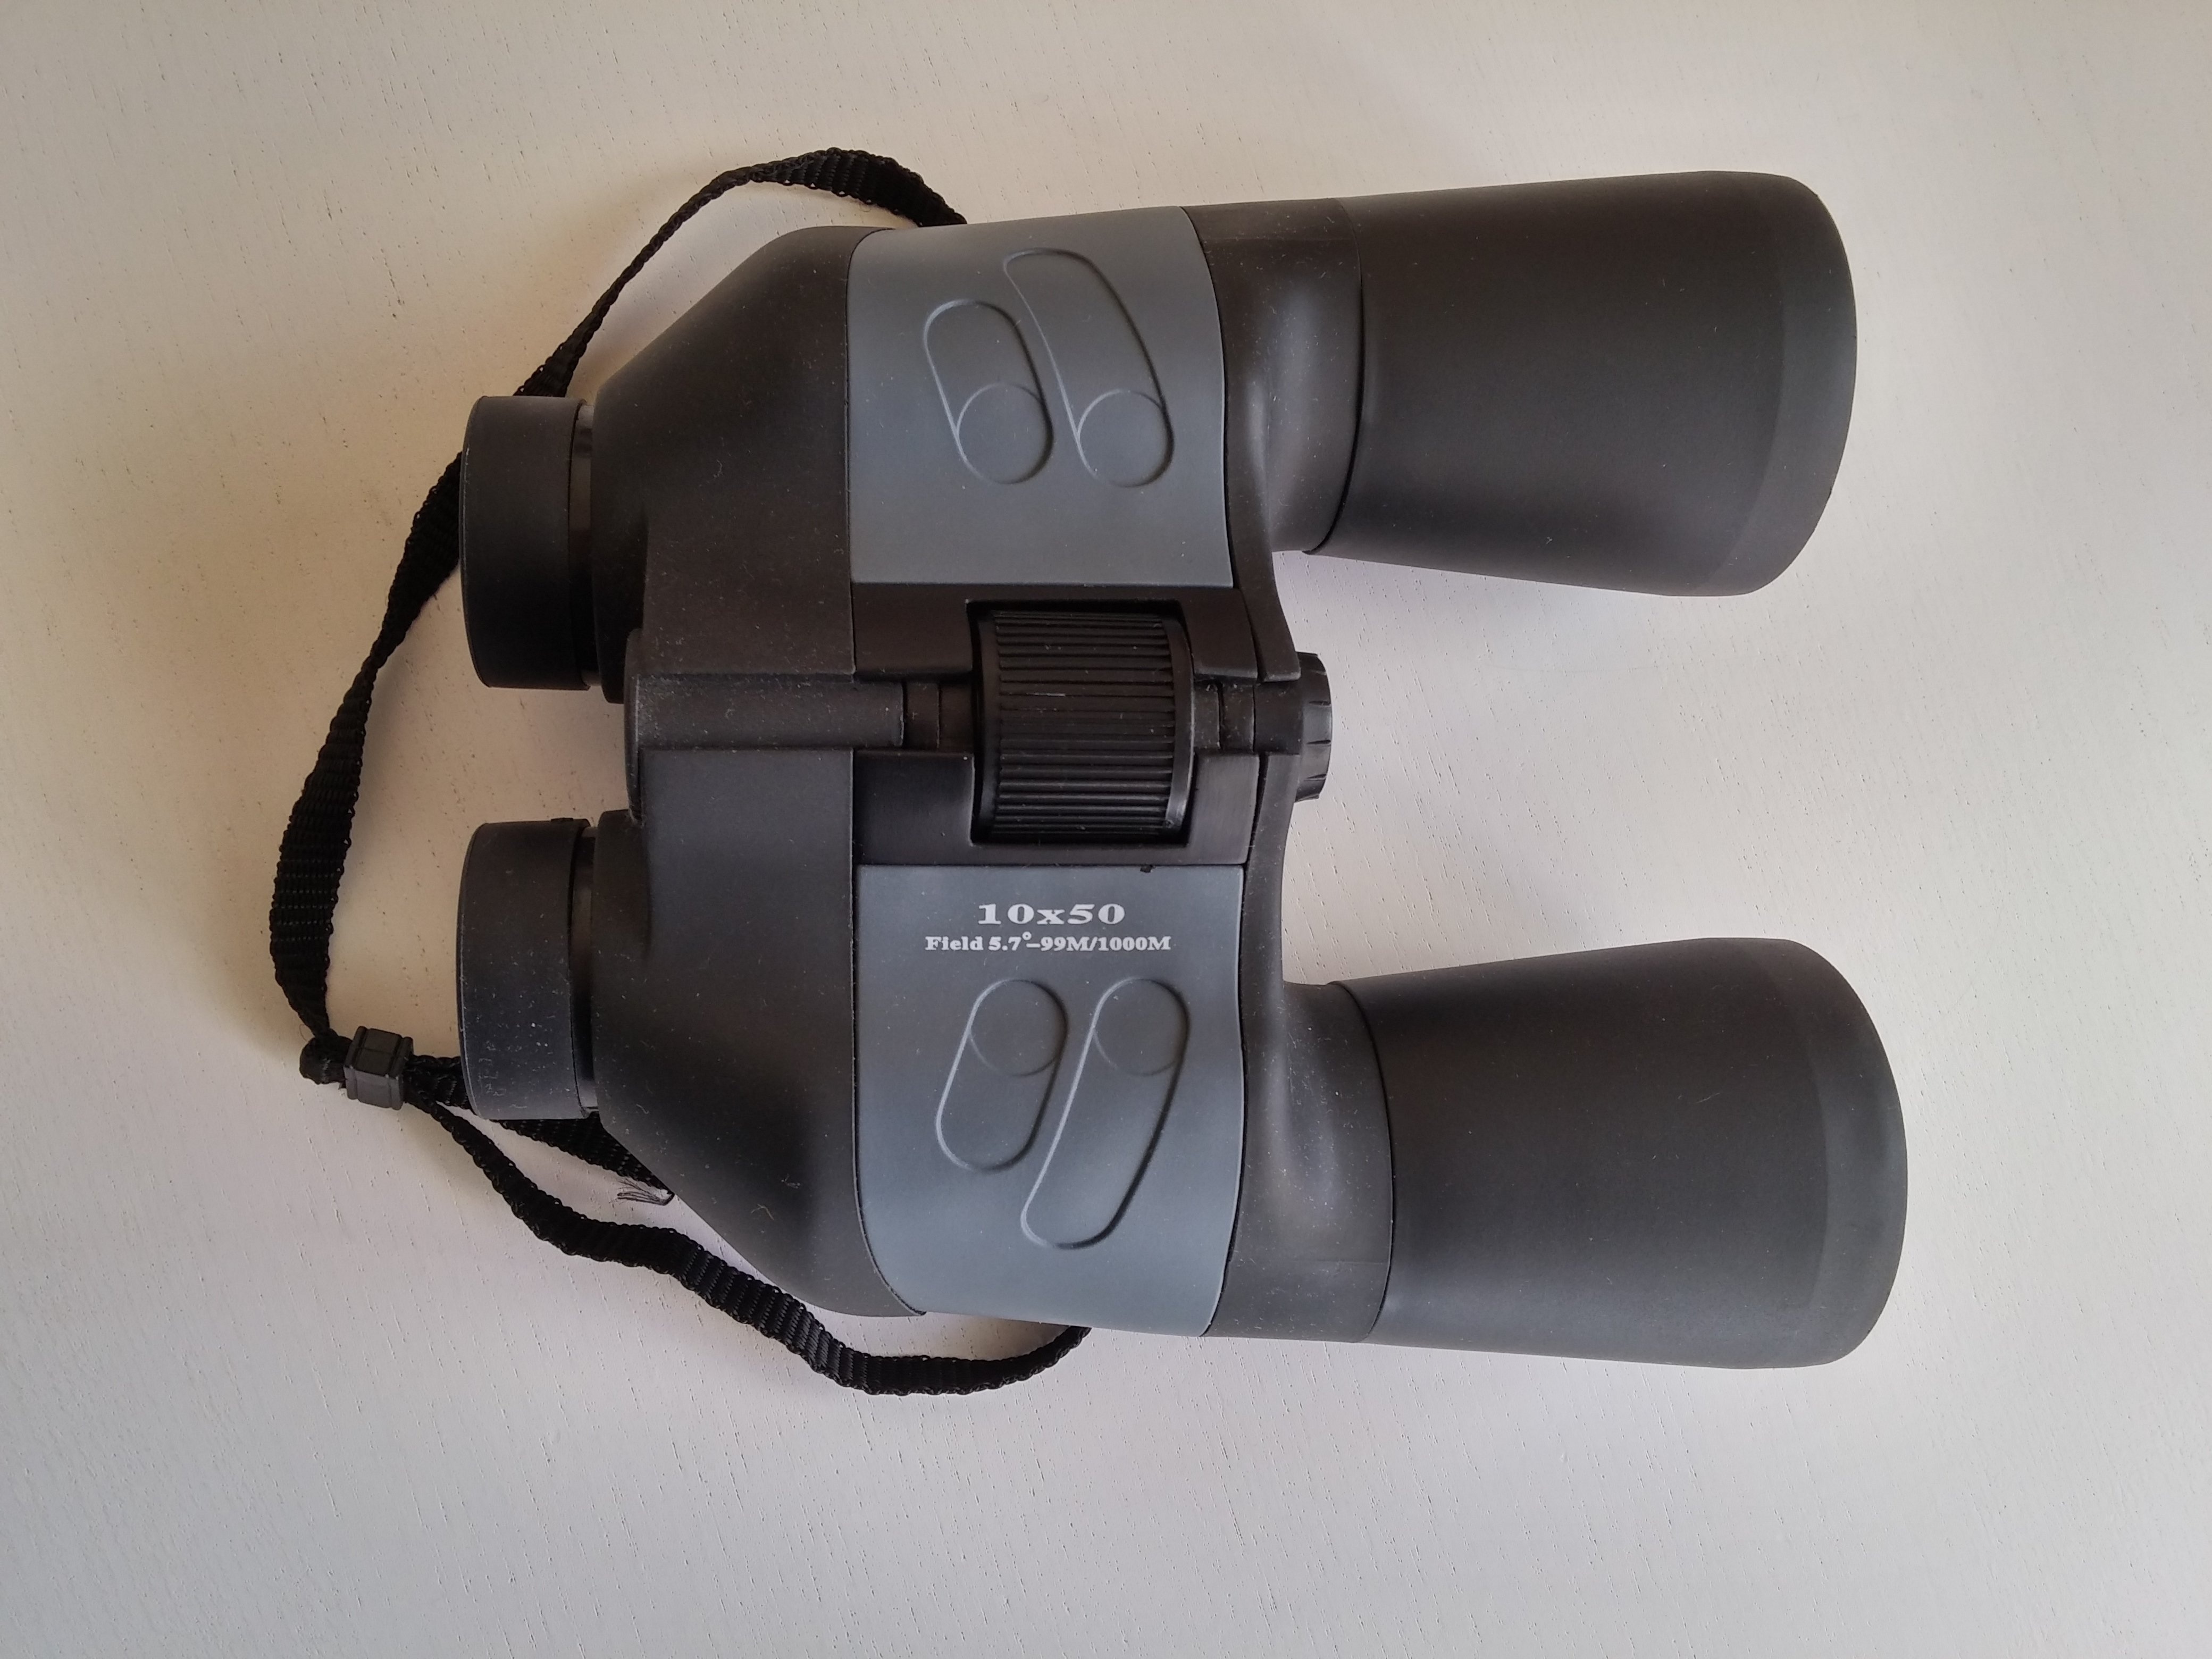 black and gray binoculars